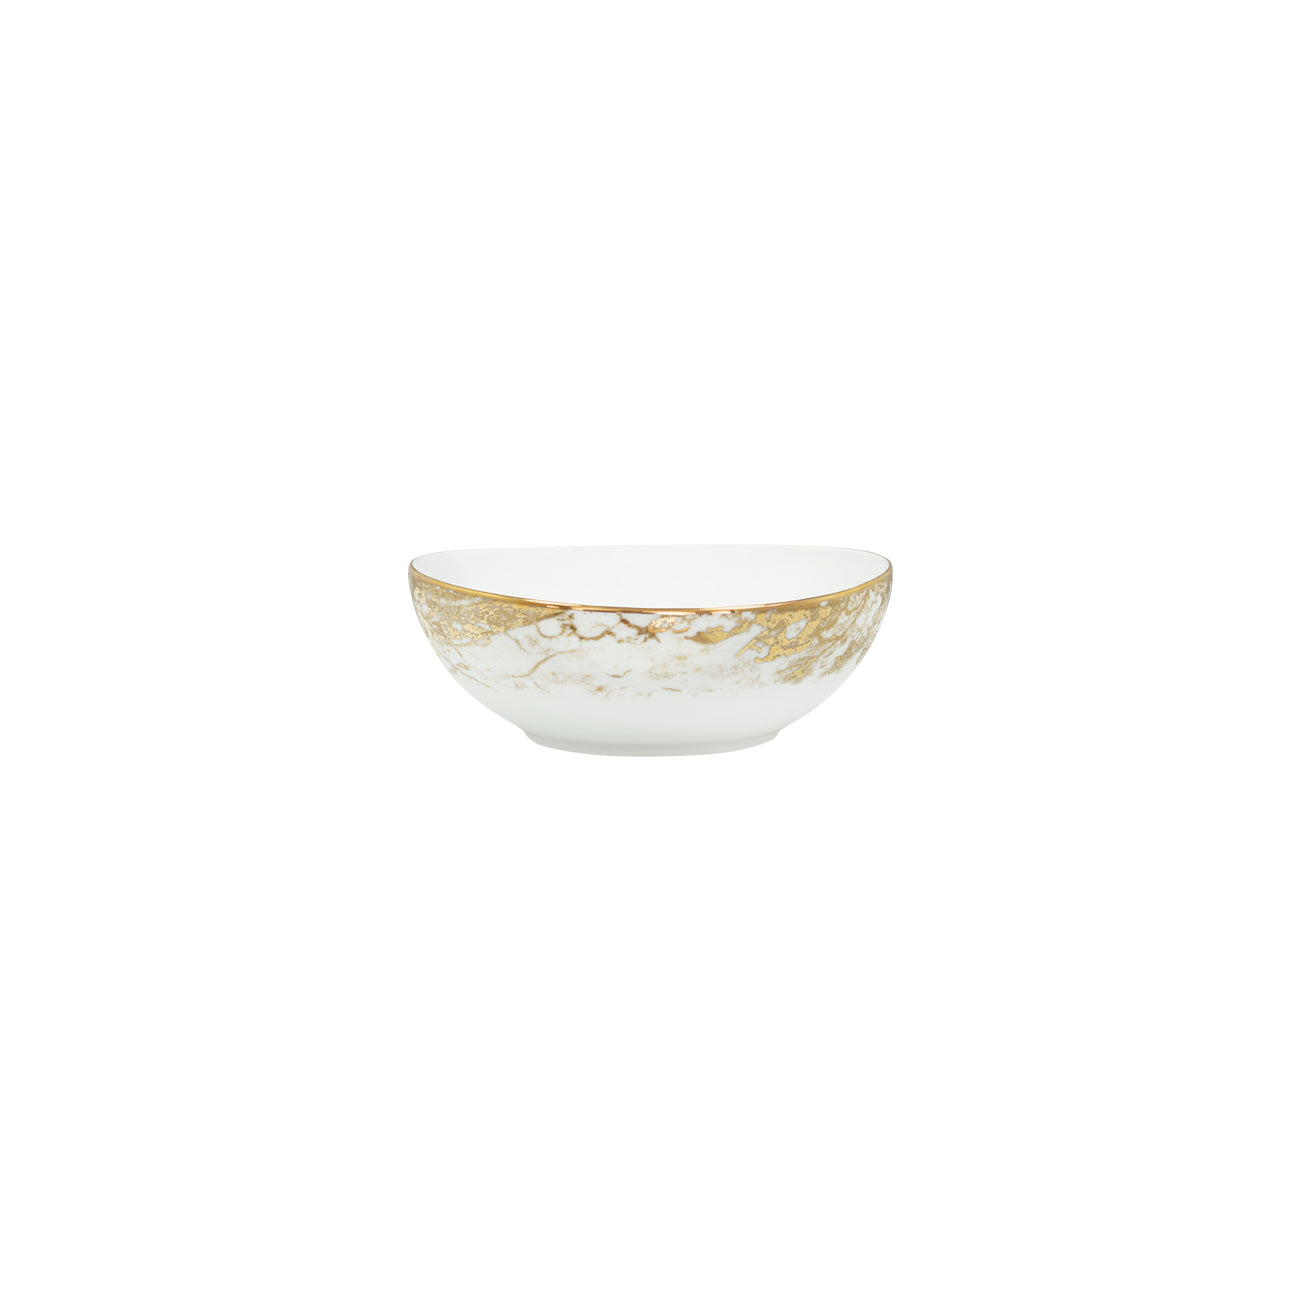 Gold porcelain salad bowl